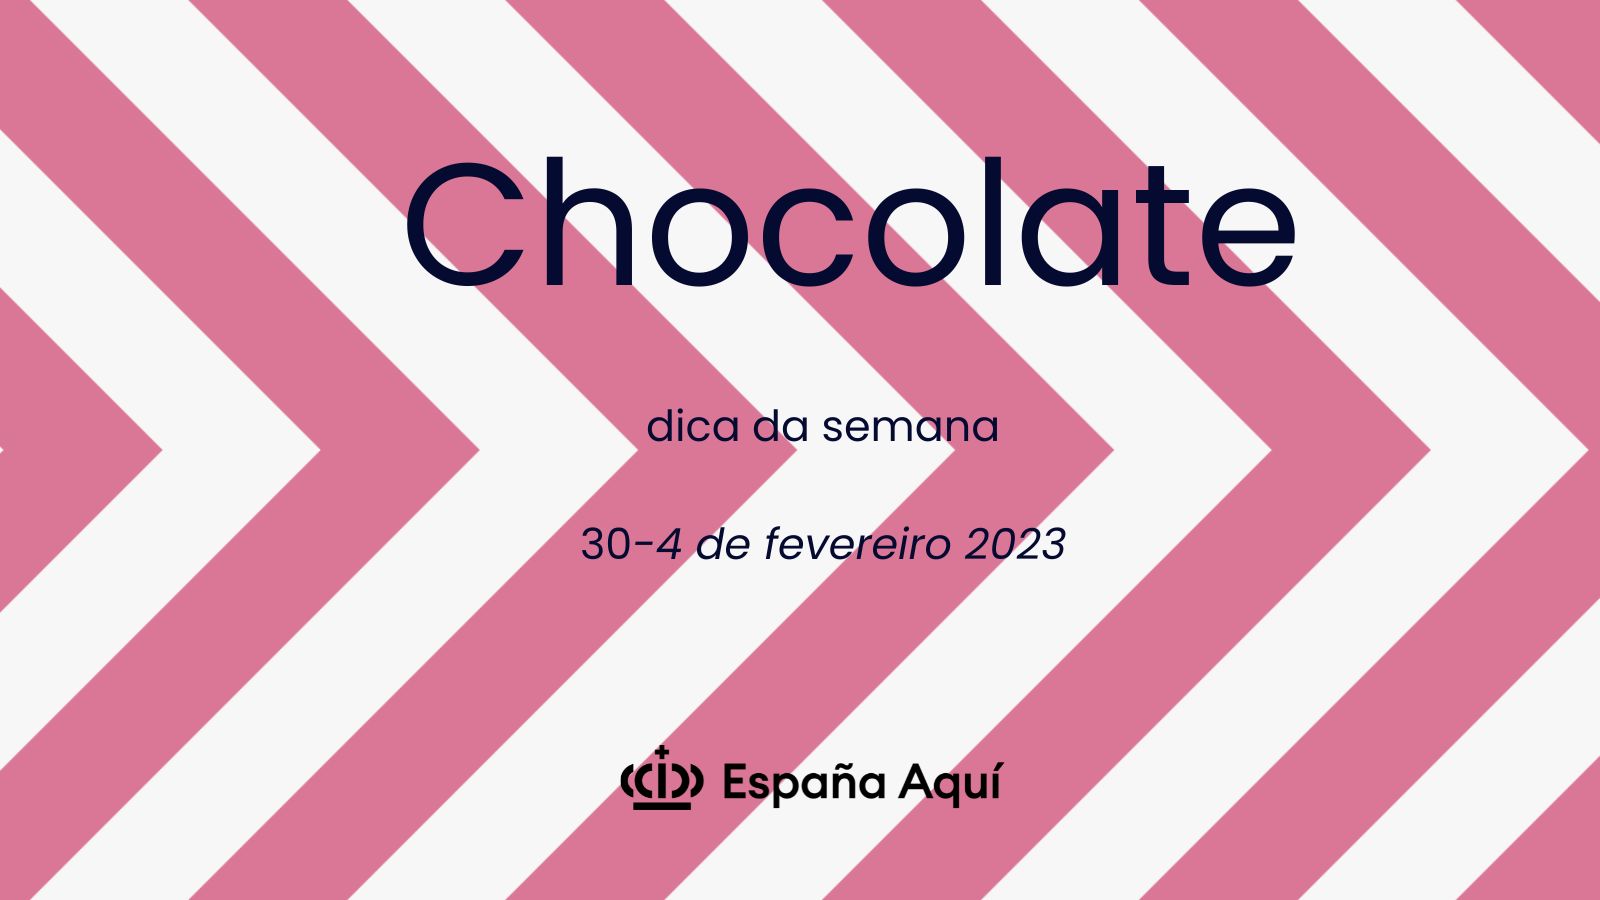 https://www.espanaaqui.com.br/pdf/2023/Dica%20da%20semana.%20%20chocolate.jpg